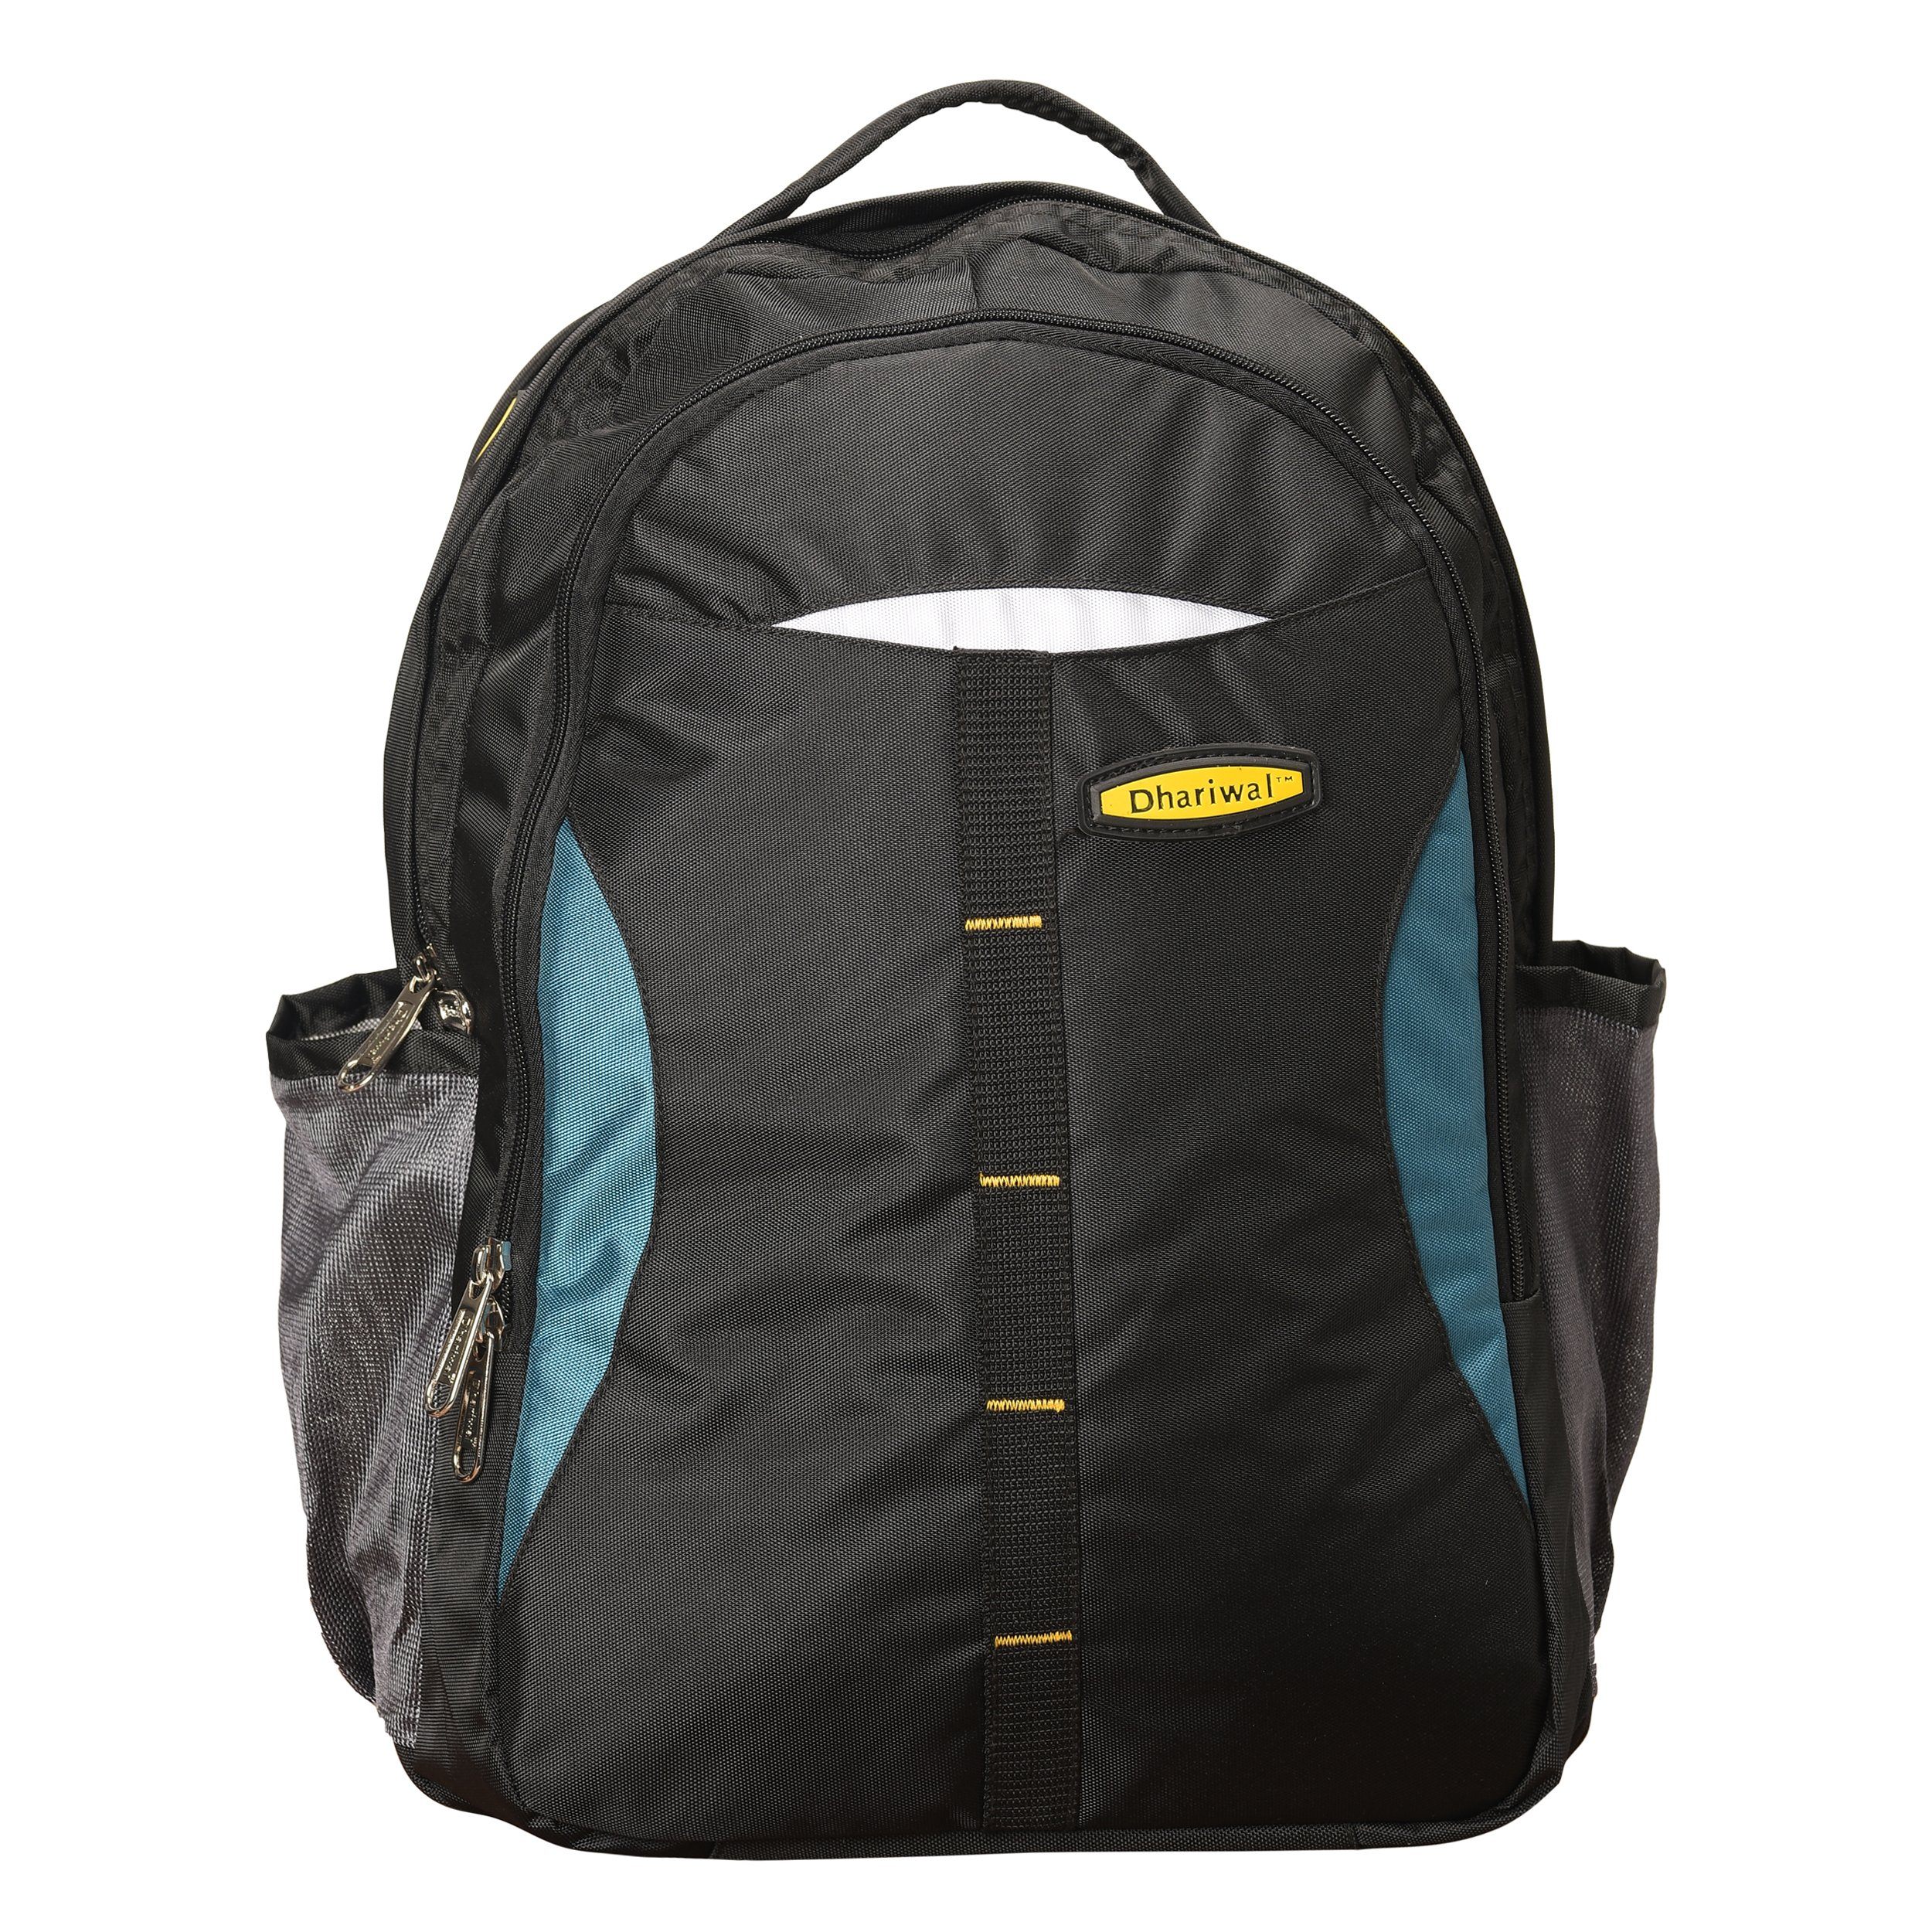 Buy Dhariwal Unisex Backpack 26L BP-210 (Grey) at Amazon.in